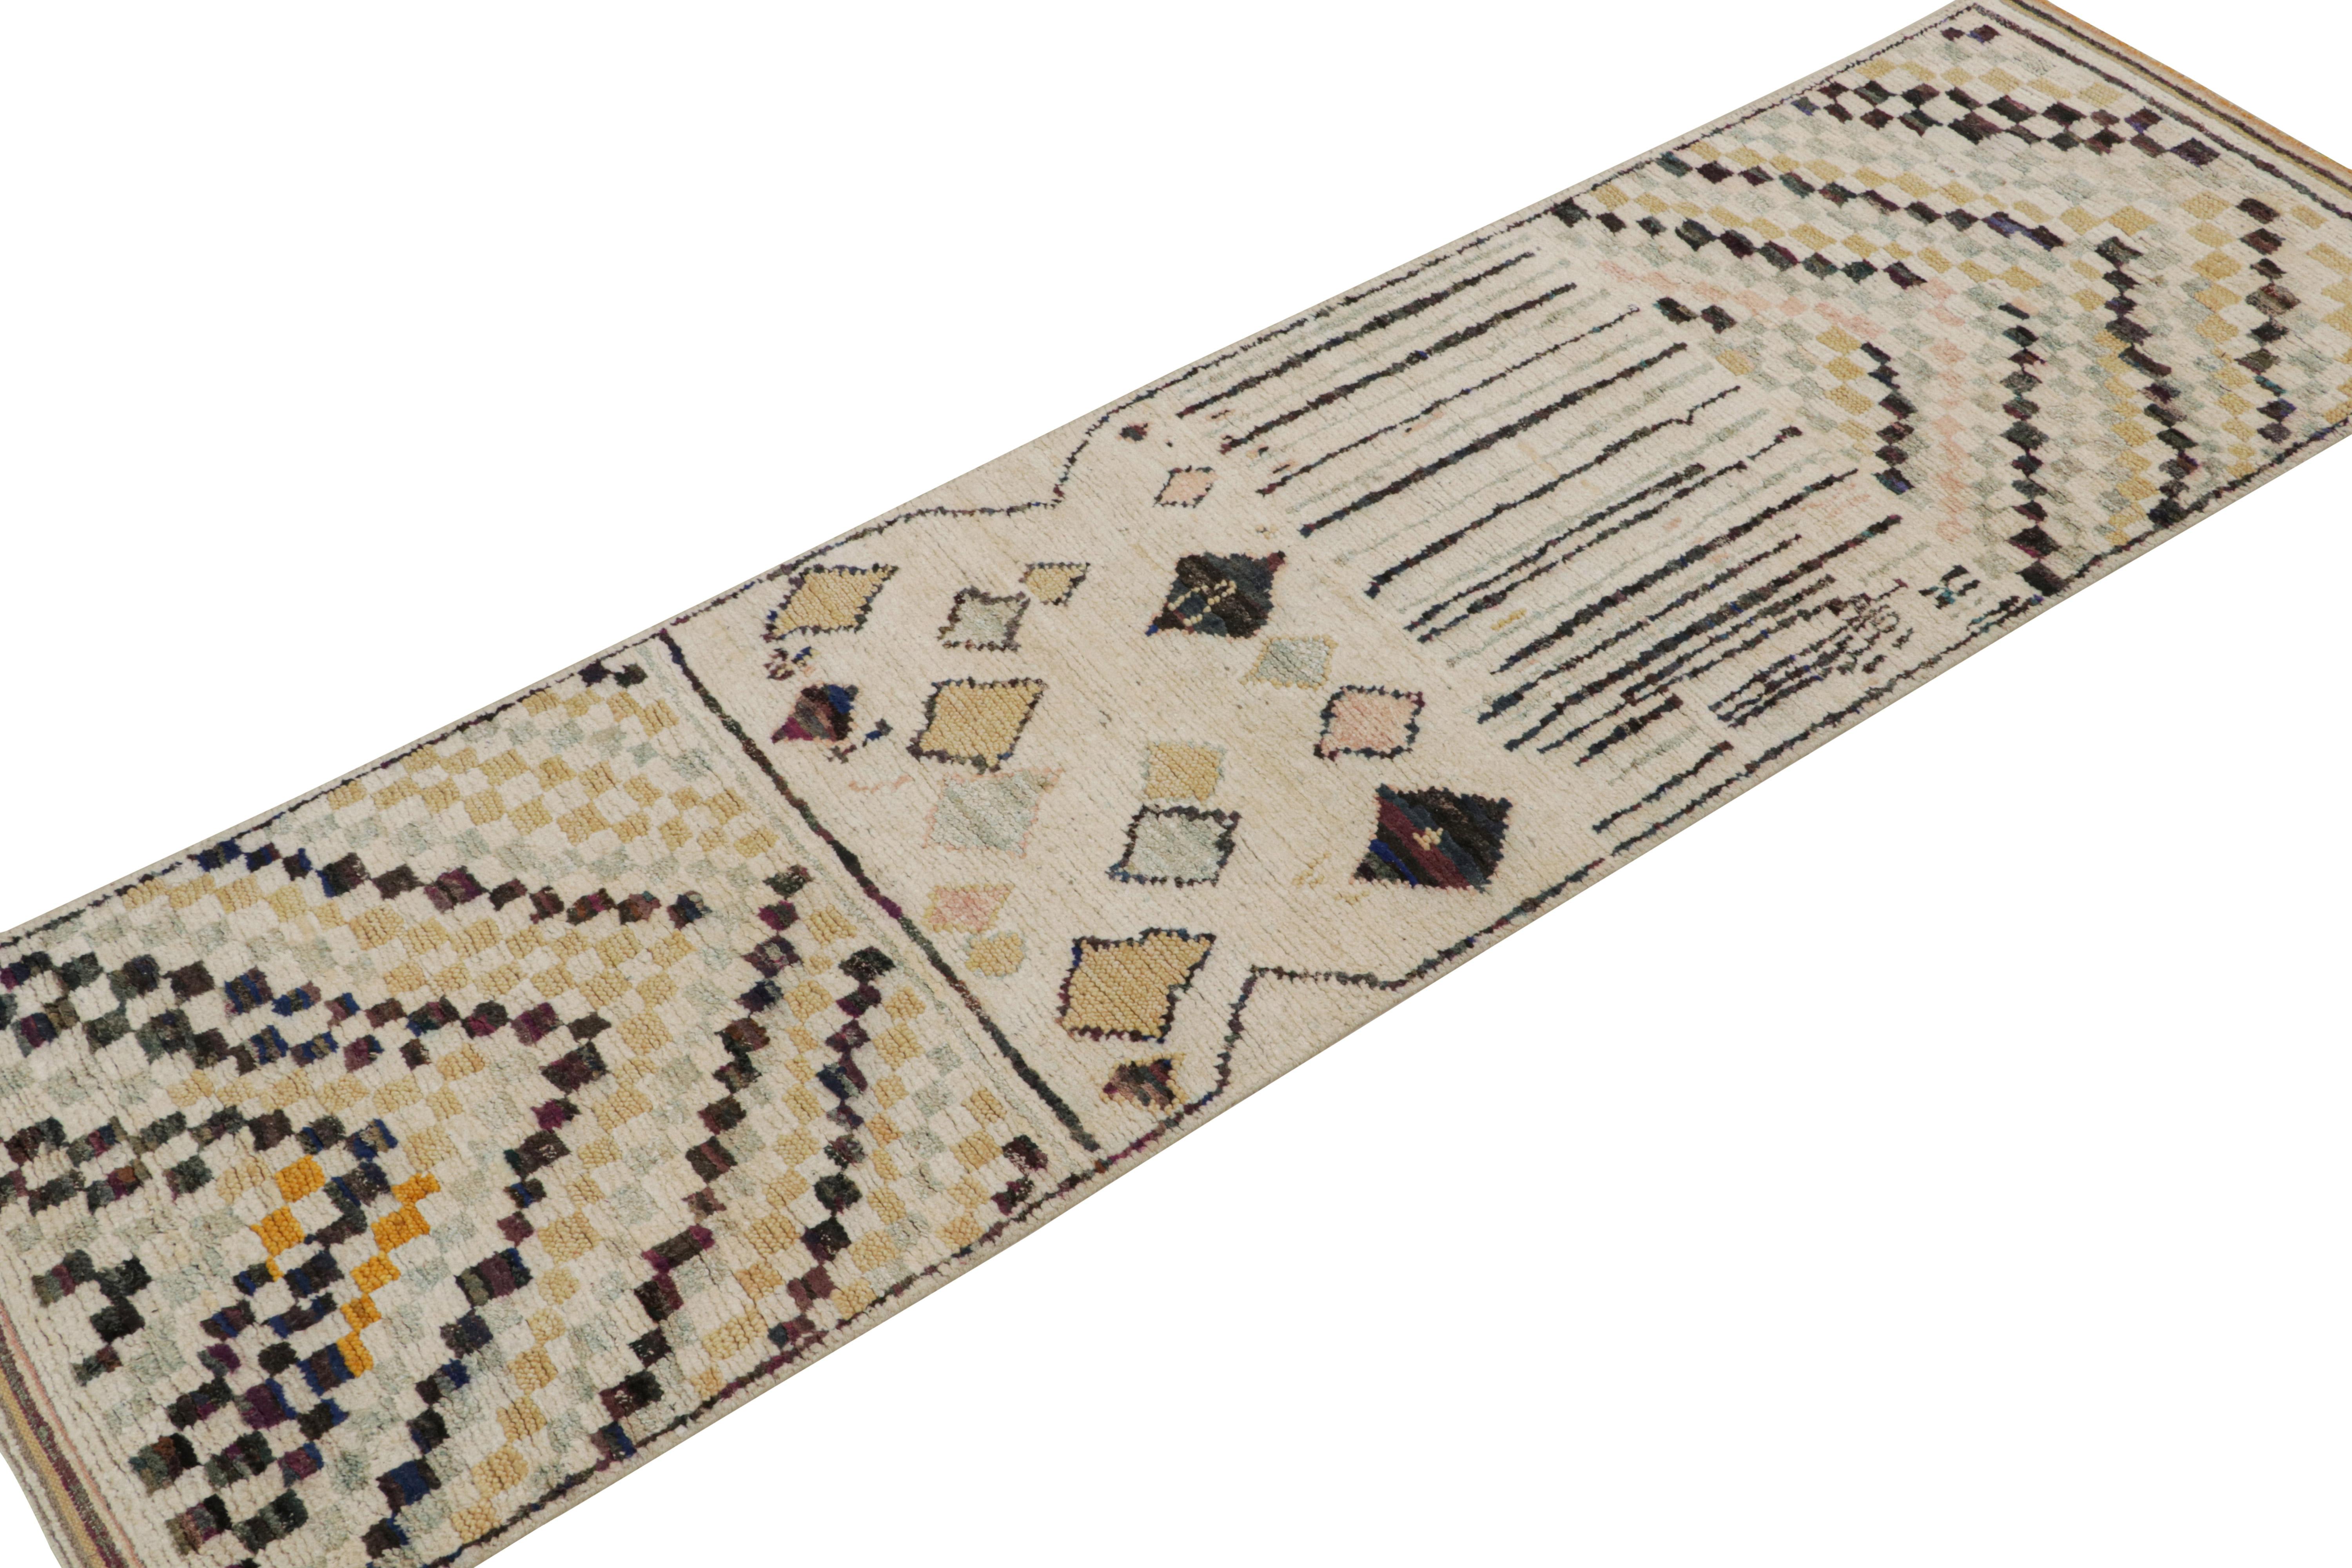 Noué à la main en laine, coton et soie, ce tapis de course 3x10 fait partie de la collection de tapis marocains de Rug & Kilim. 

Sur le Design :

Ces motifs représentent une version moderne du style primitiviste berbère, avec des motifs